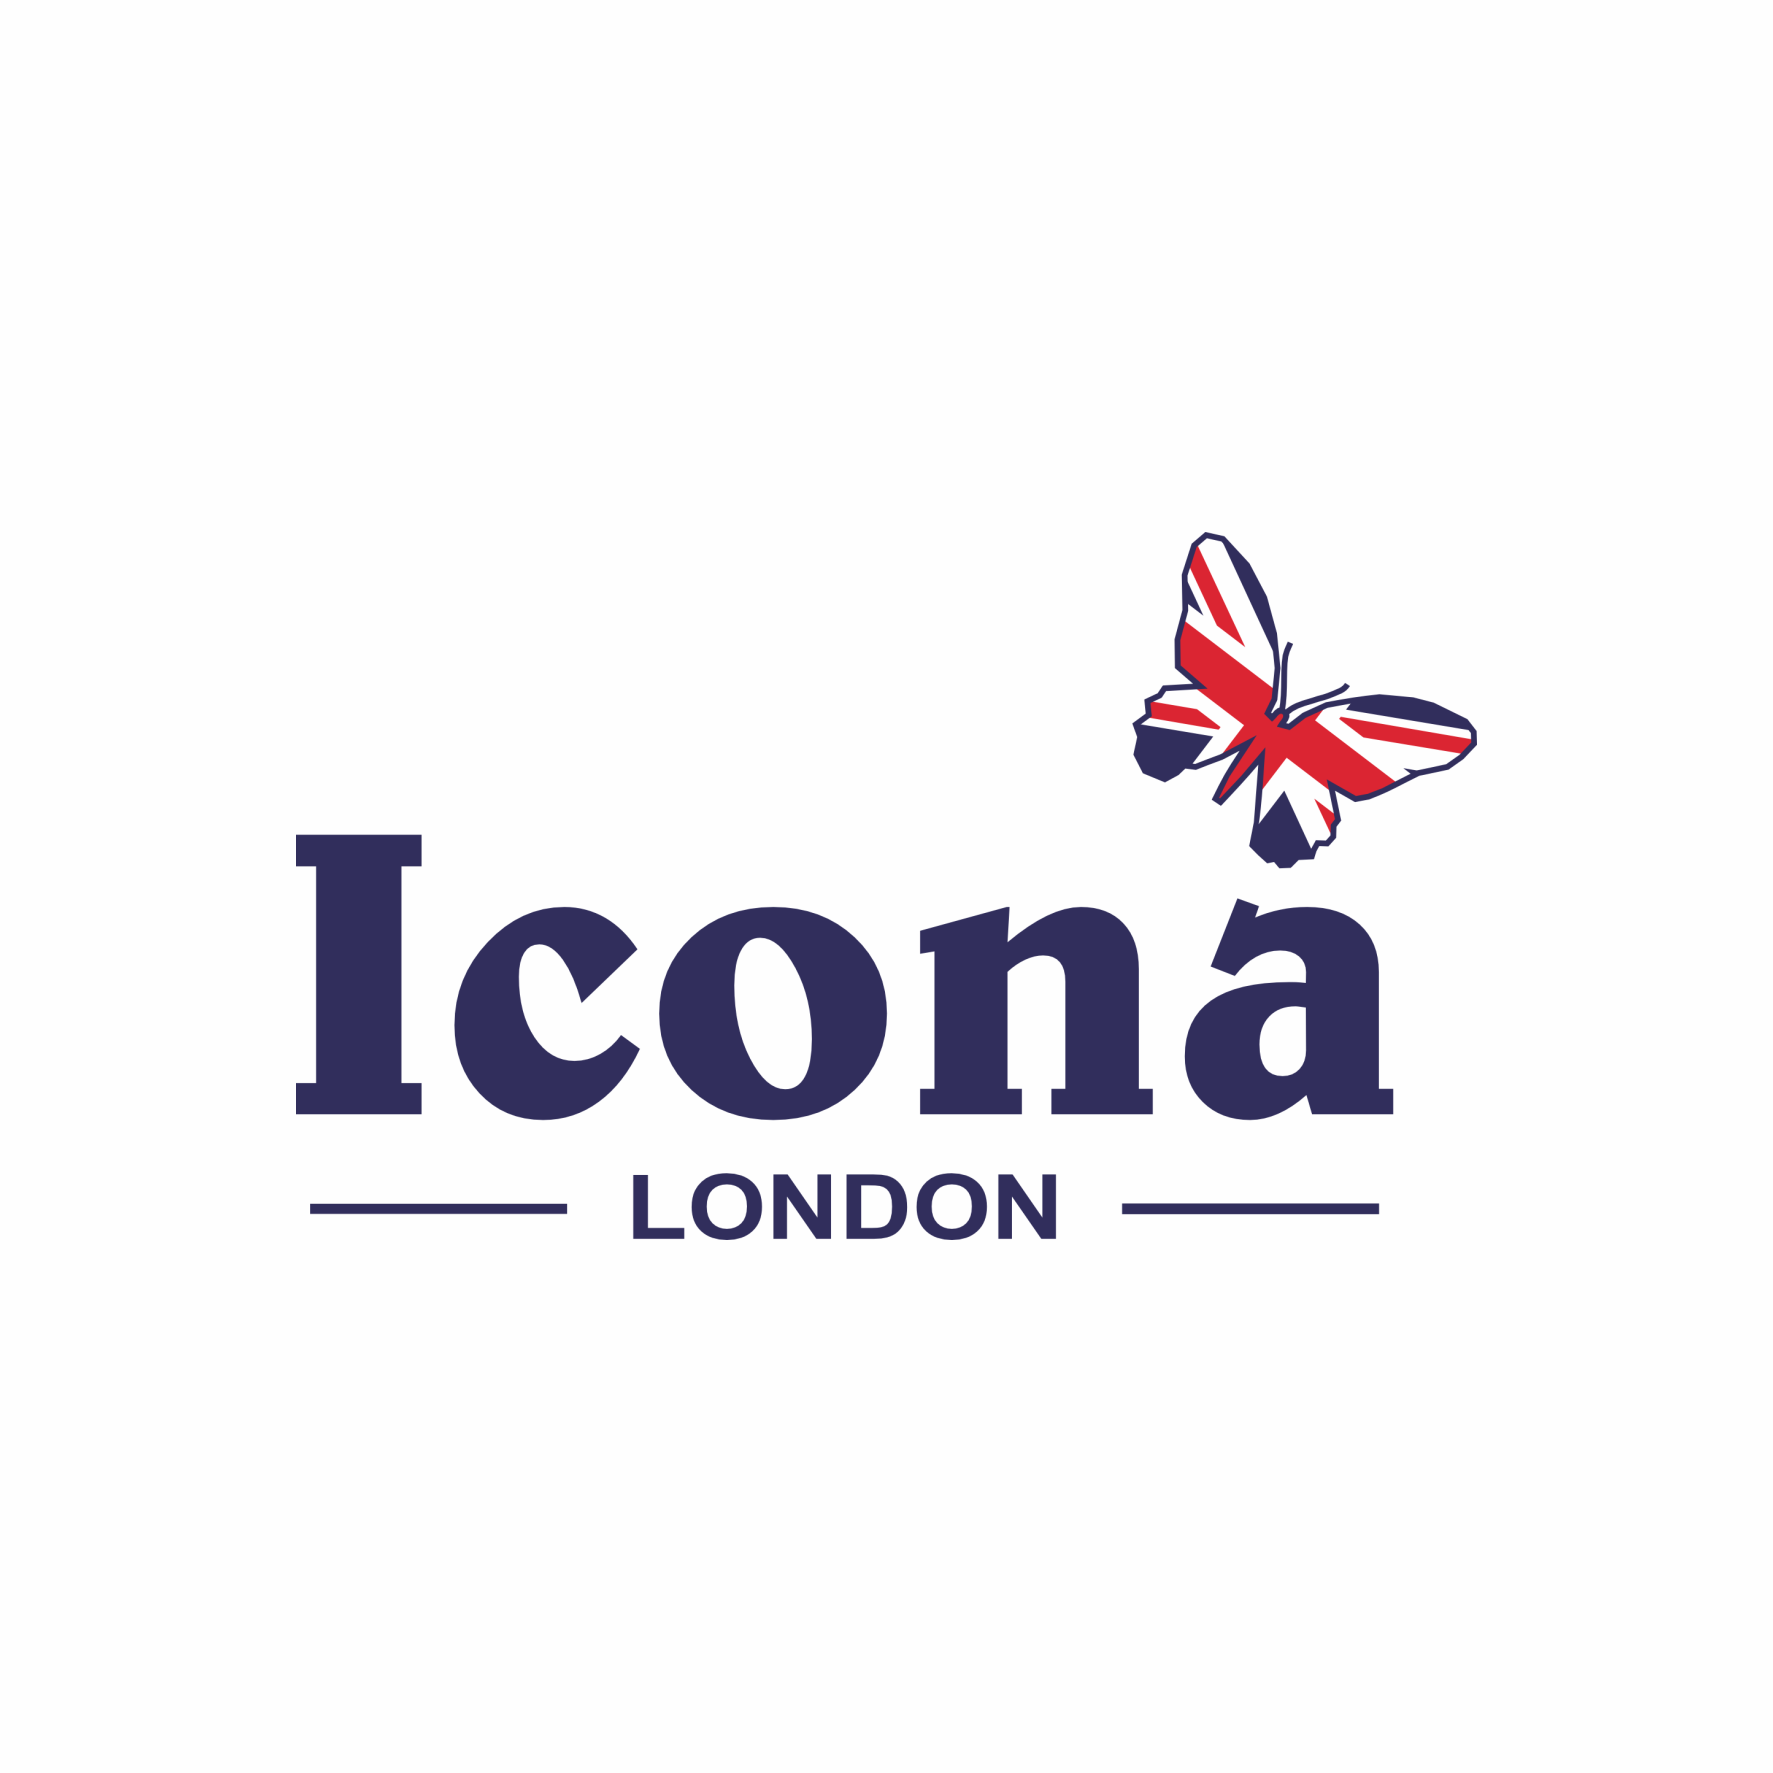 Icona London